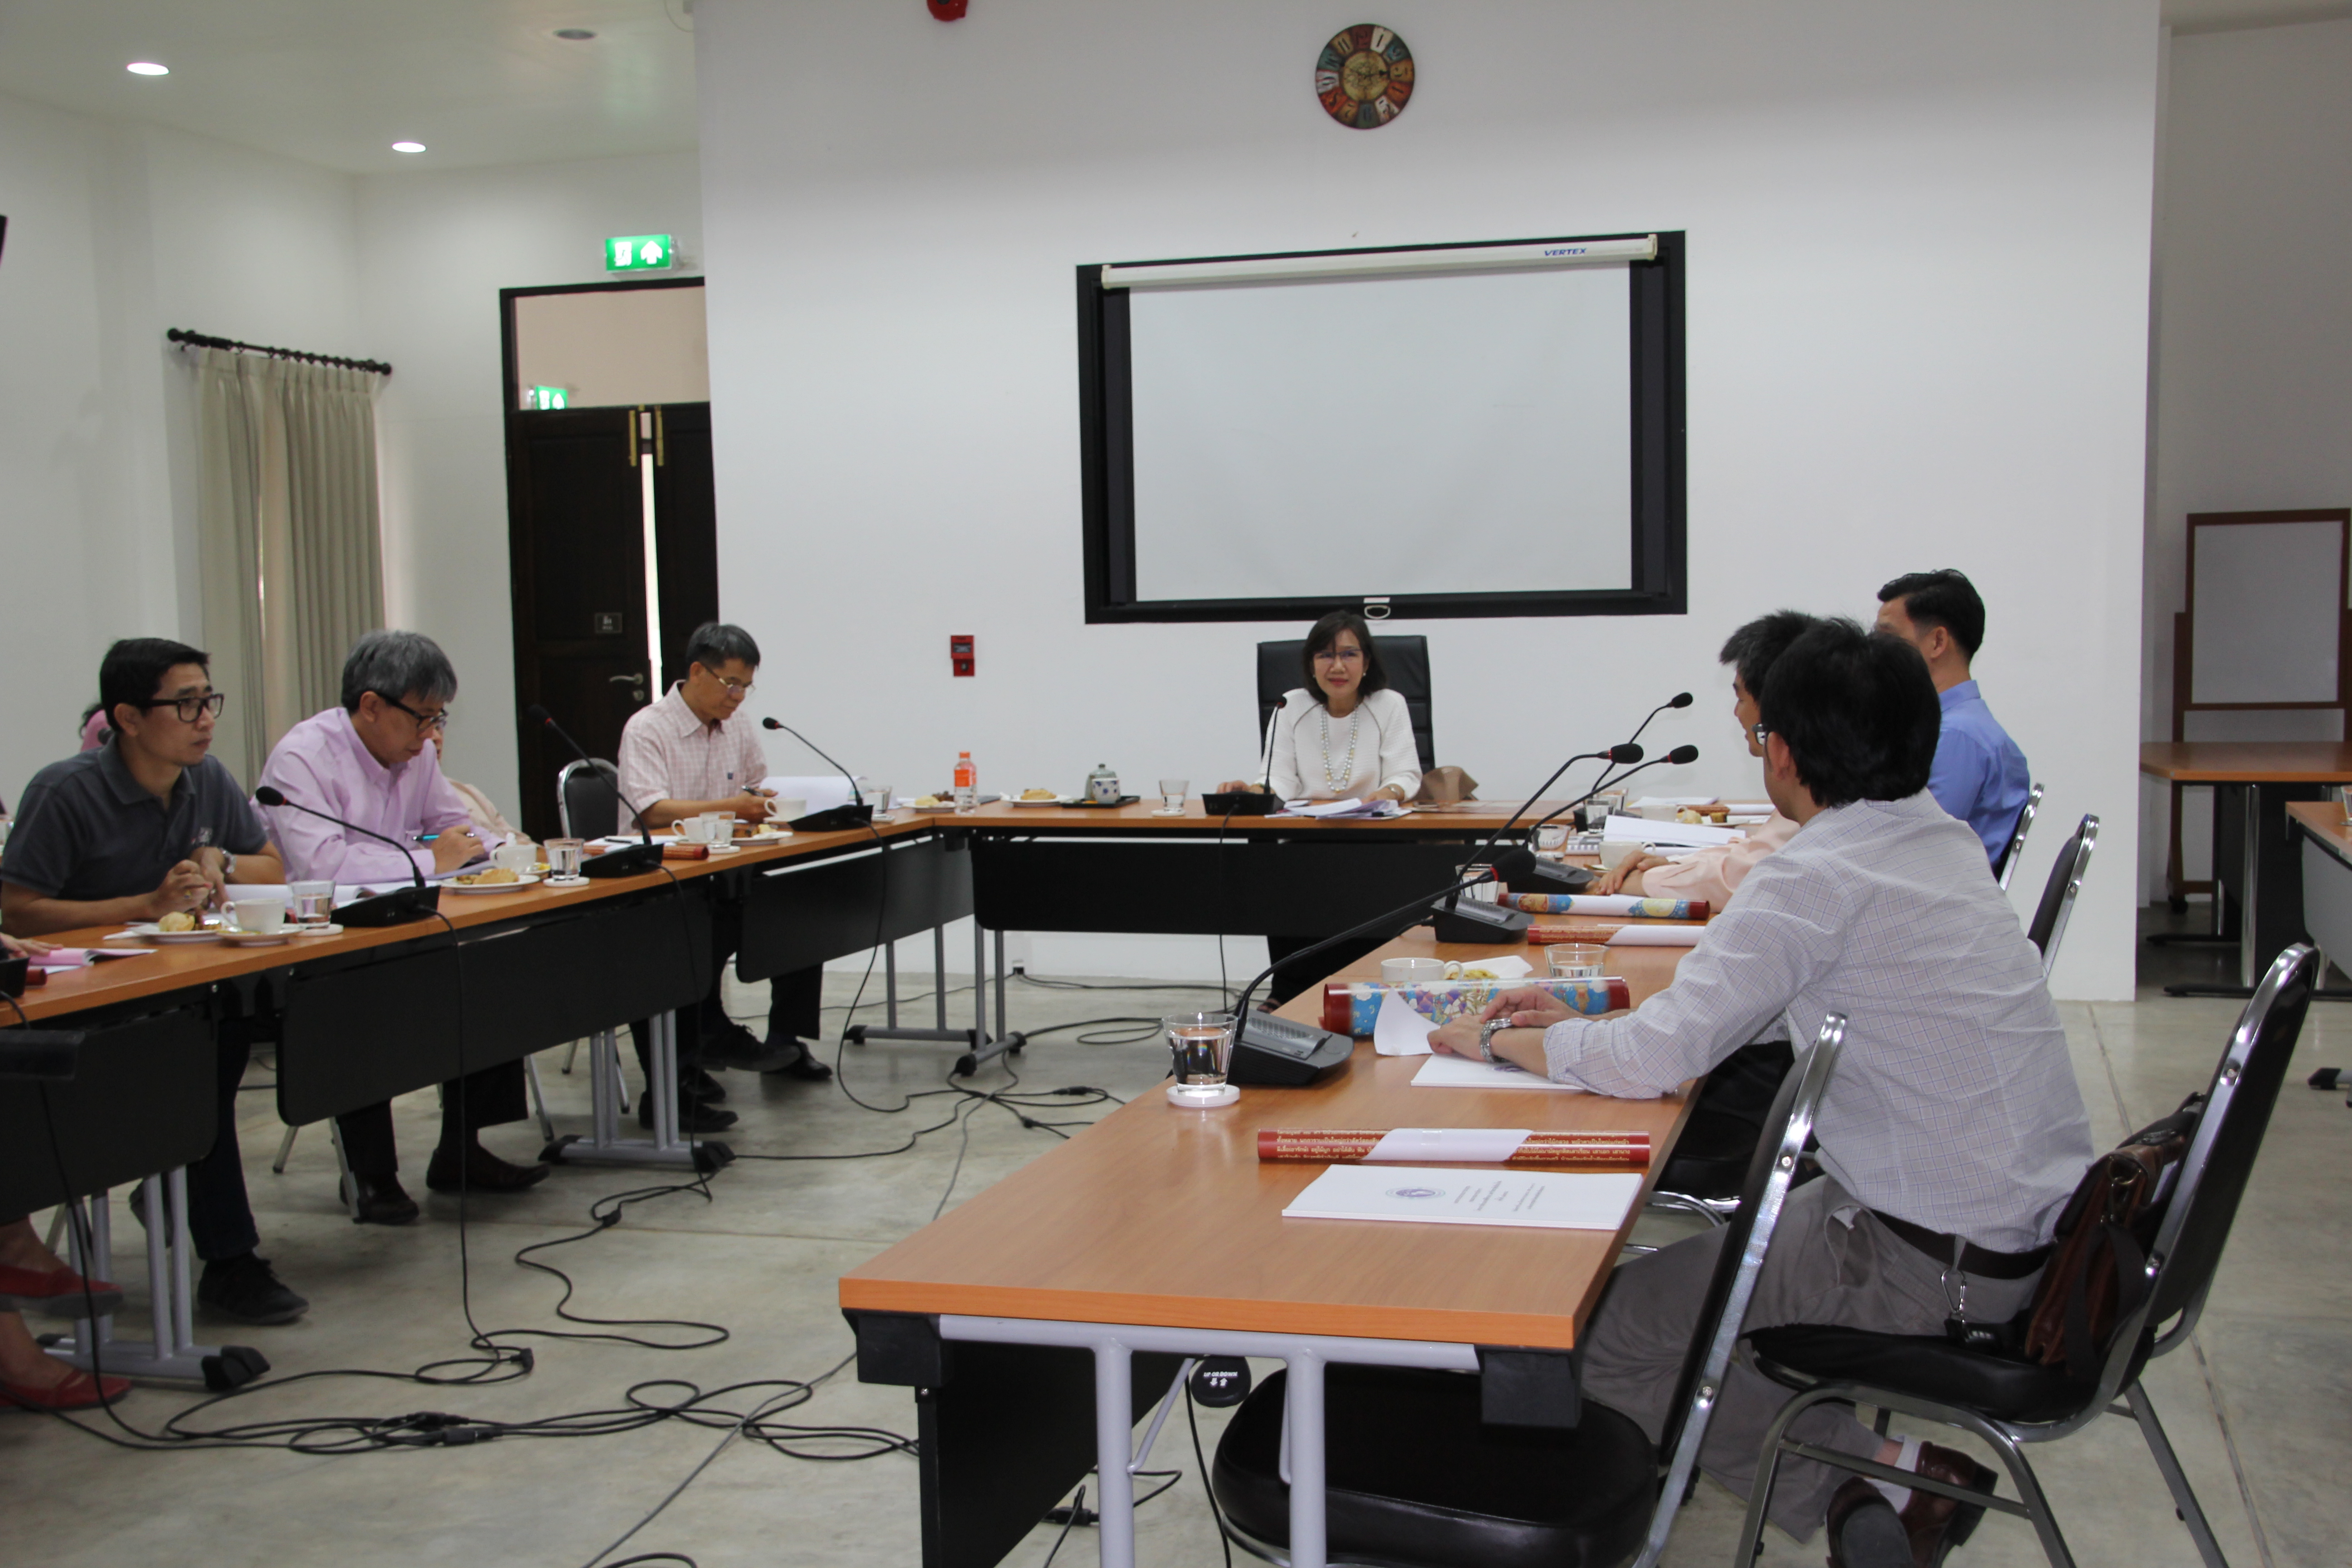 การประชุมคณะกรรมการบริหารโครงการล้านนาคดีศึกษา มหาวิทยาลัยเชียงใหม่ ครั้งที่ 1/2558